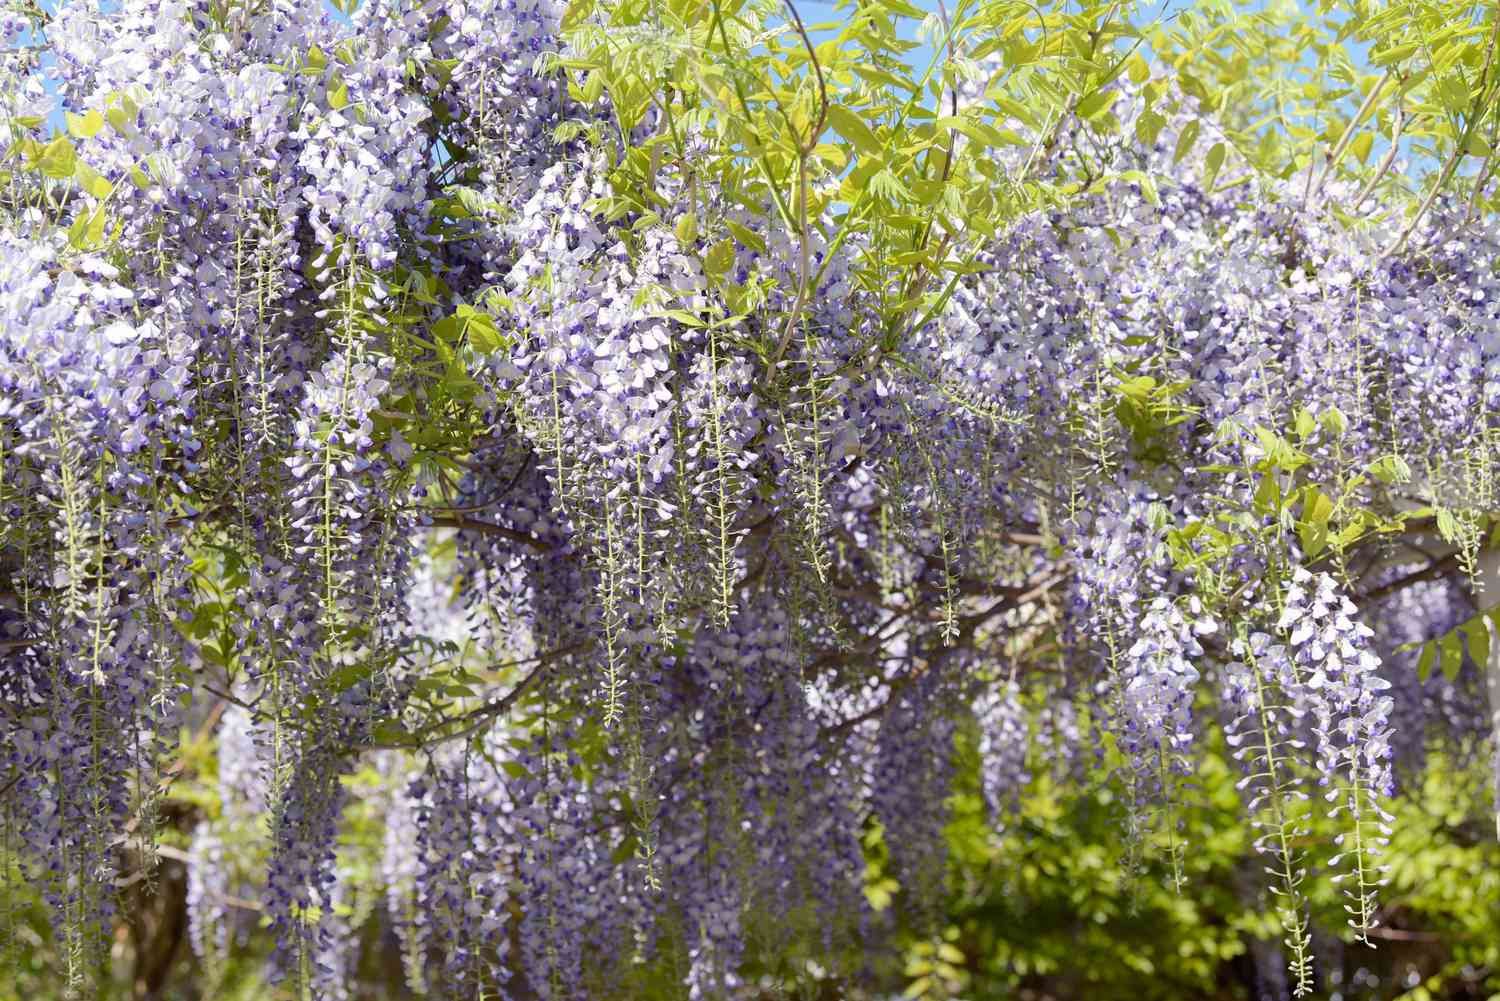 Japanischer Glyzinienbaum 'Multijuga' mit violetten Blüten, die an Ranken mit hellgrünen Blättern hängen